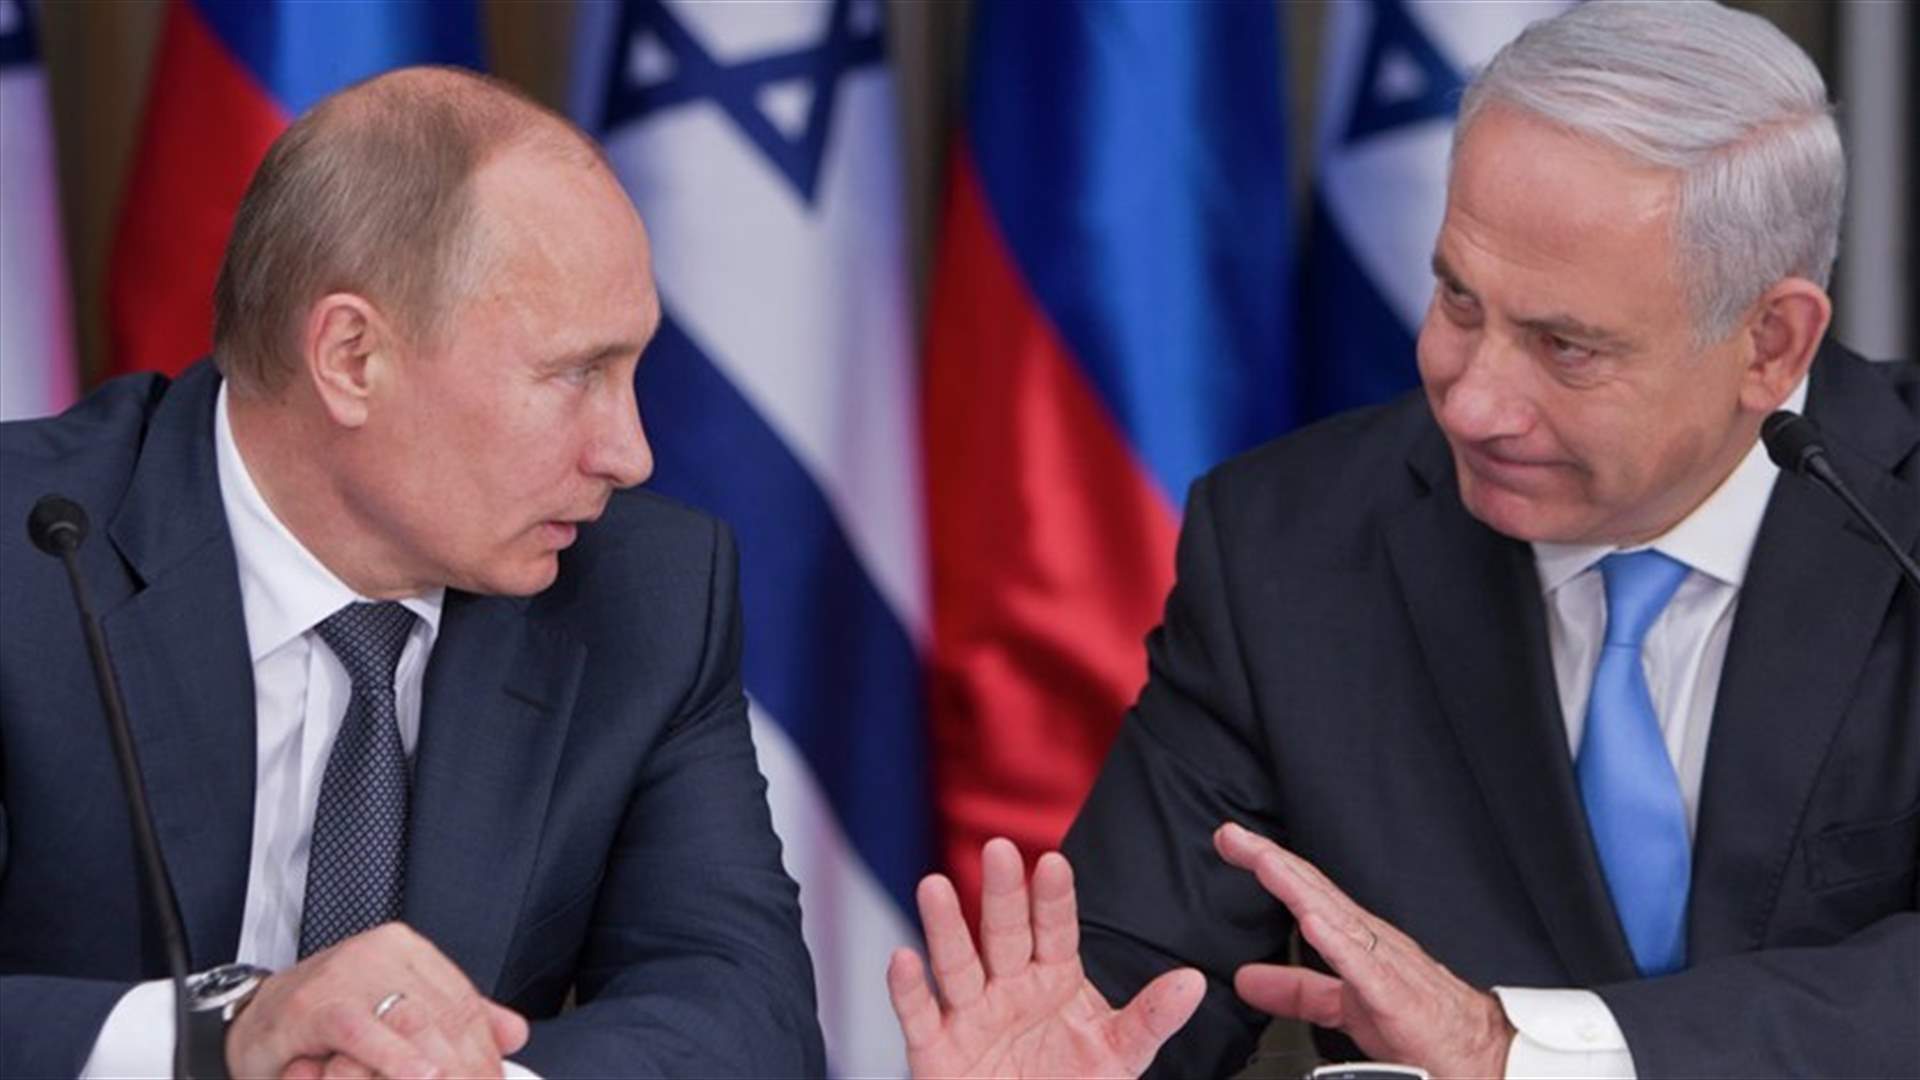 Russian, Israeli leaders discuss Iran nuclear program, Syria, Iraq